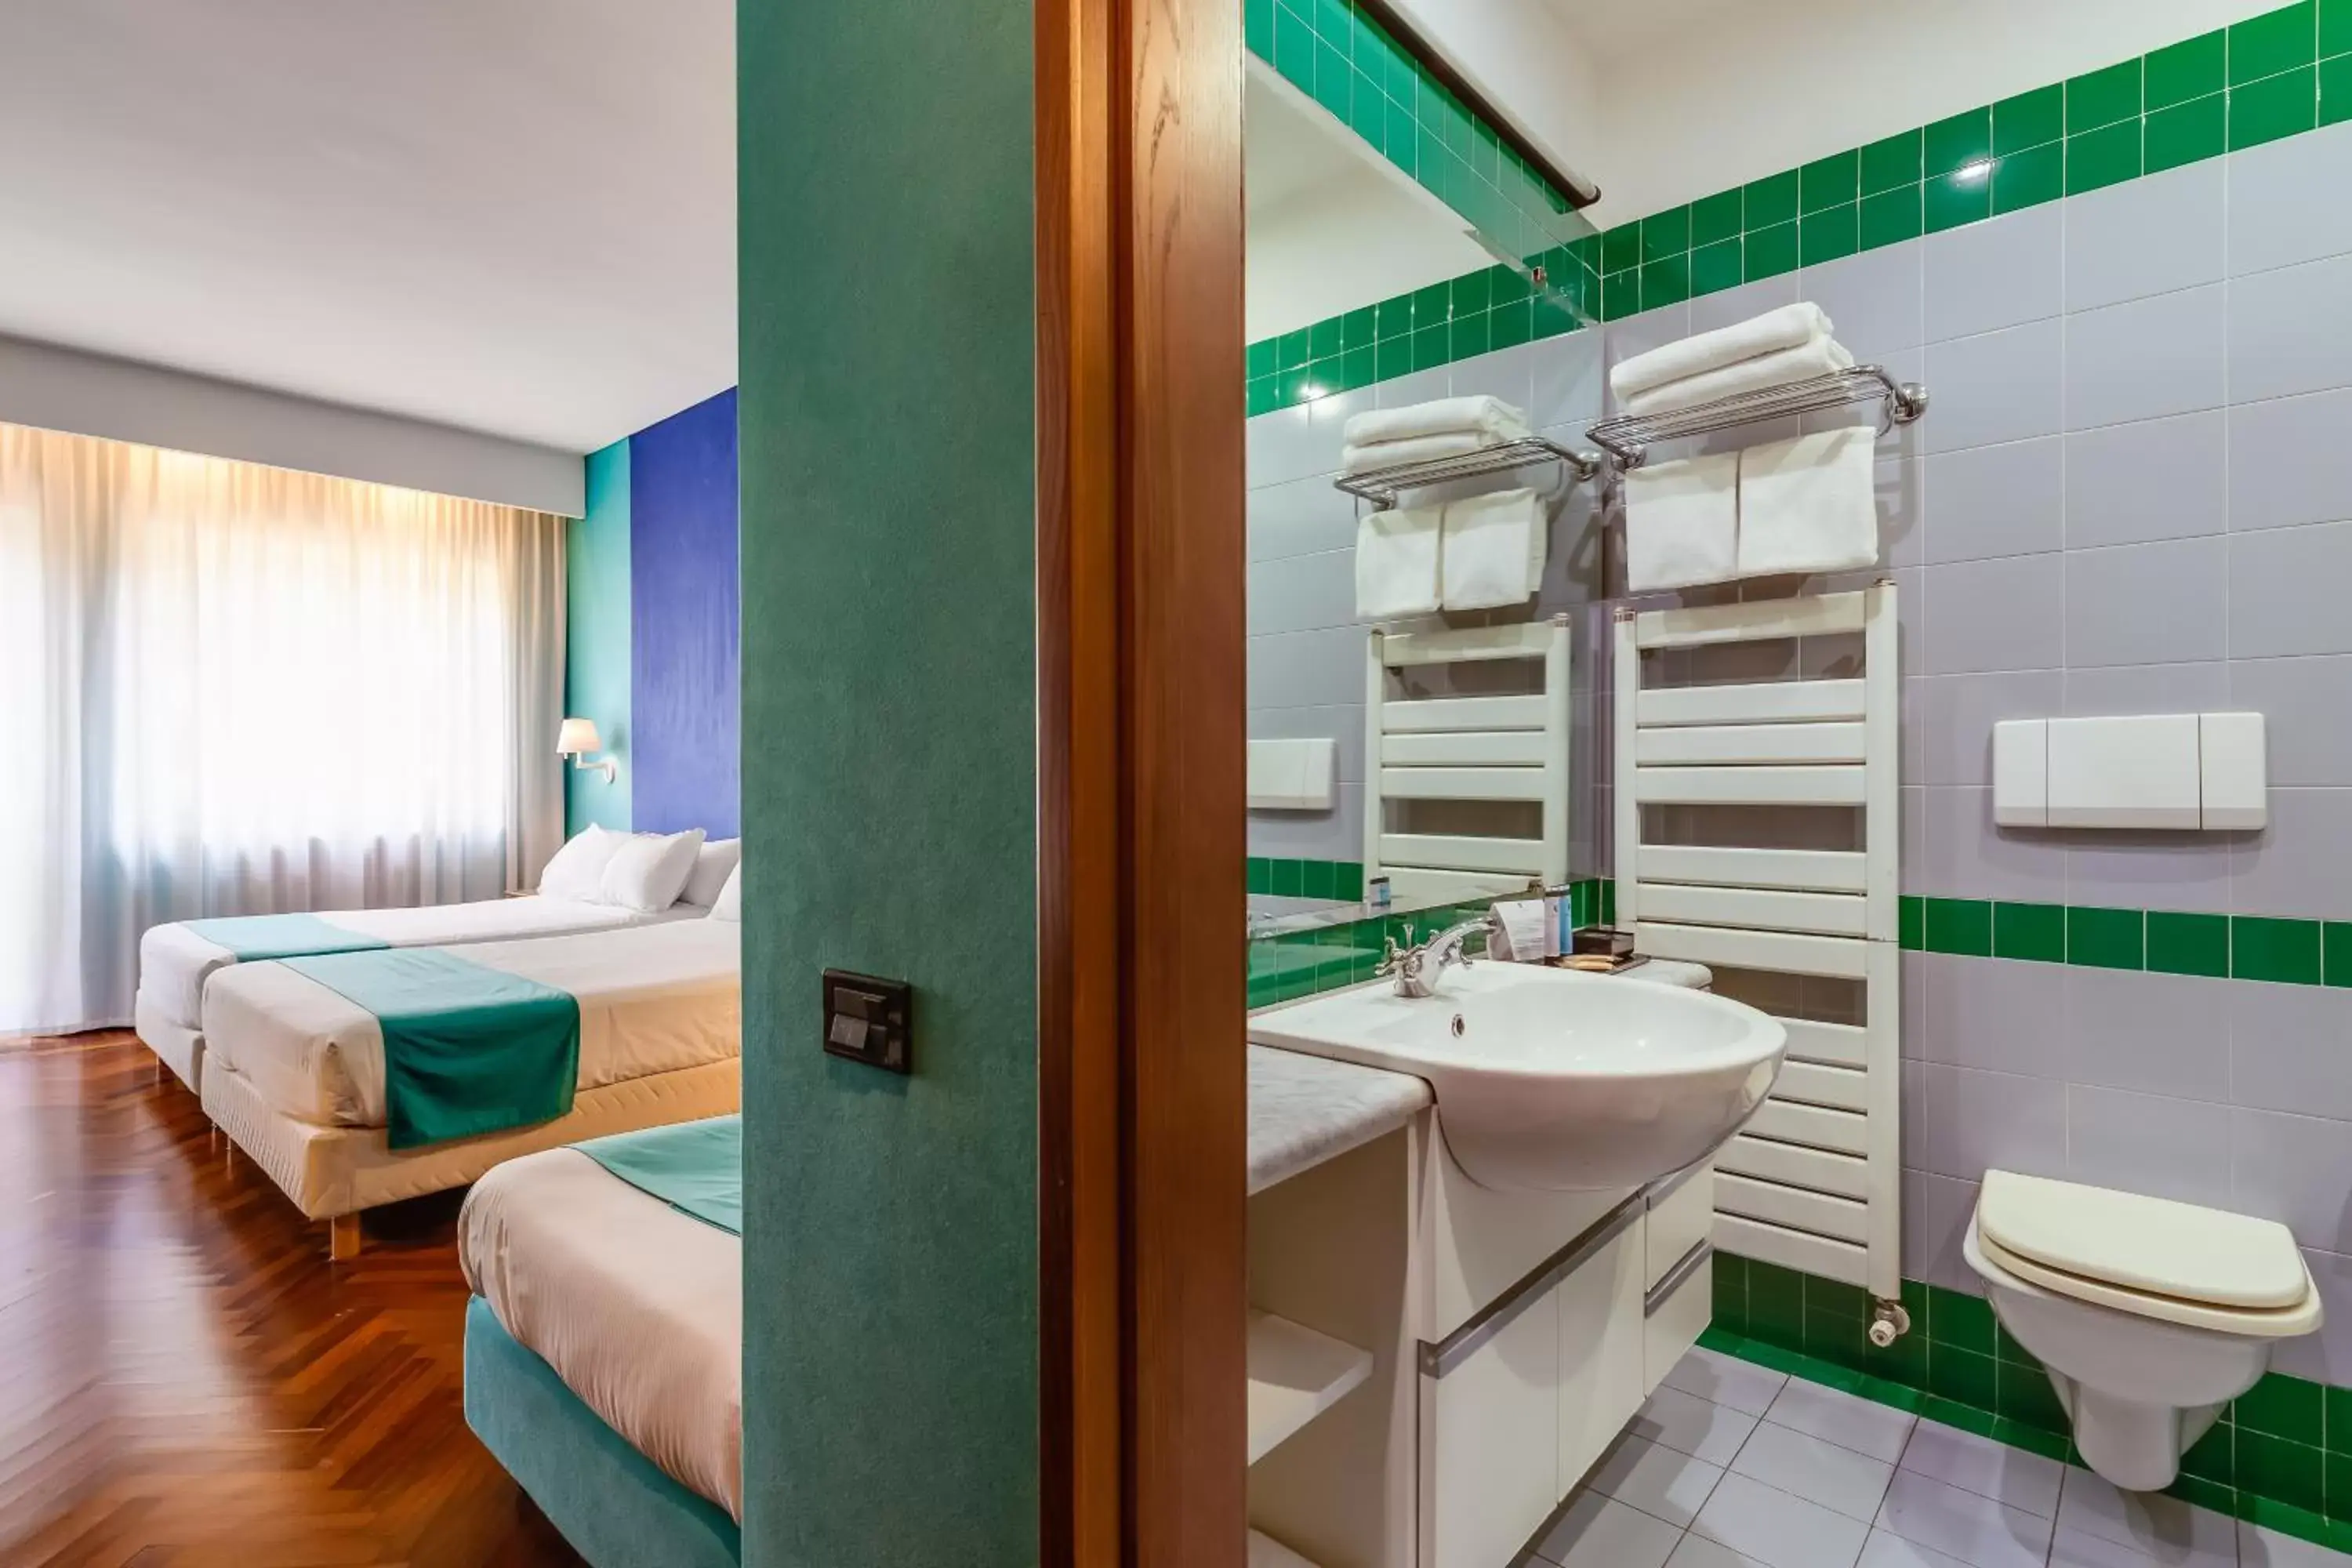 Bathroom in Culture Hotel Villa Capodimonte